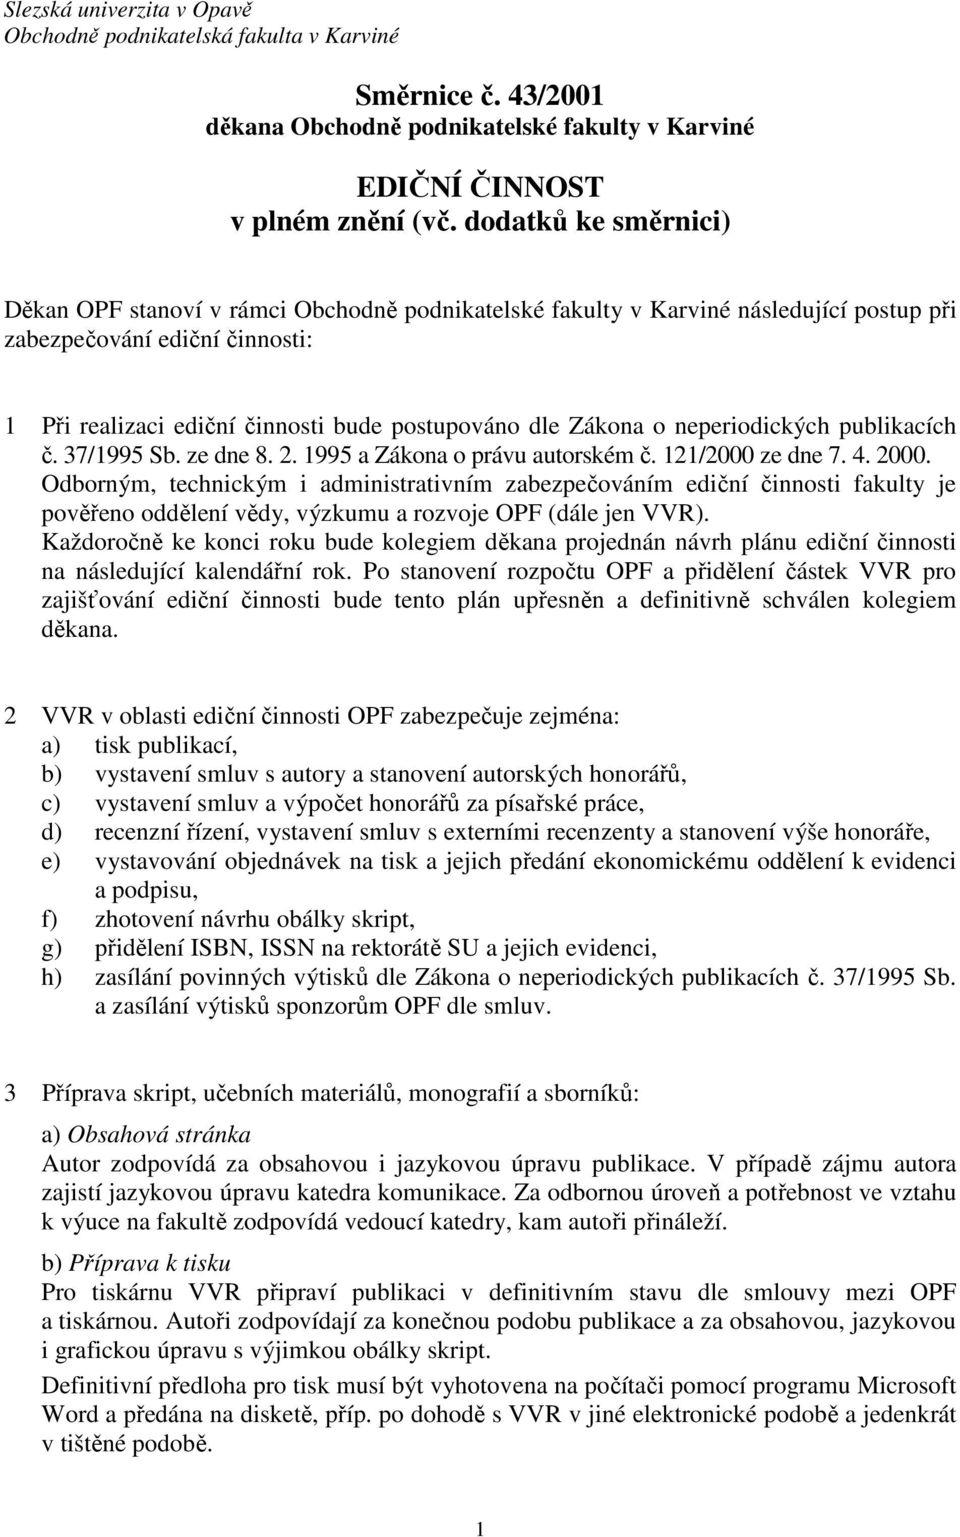 Zákona o neperiodických publikacích č. 37/1995 Sb. ze dne 8. 2. 1995 a Zákona o právu autorském č. 121/2000 ze dne 7. 4. 2000.